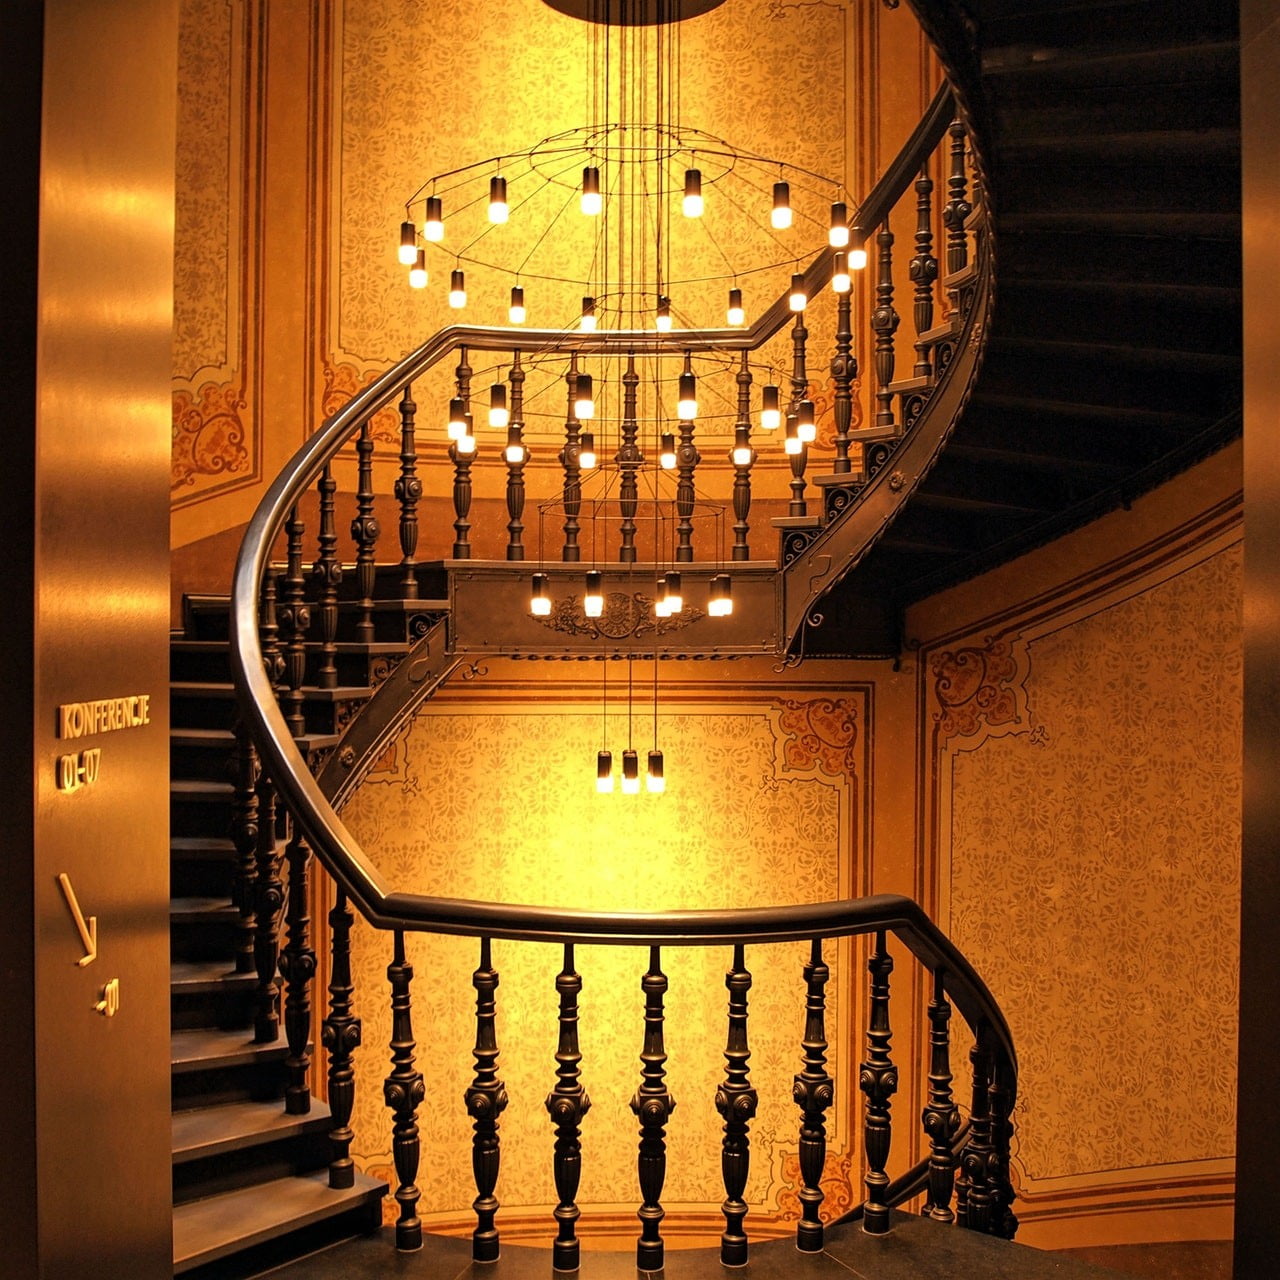 Kronleuchter eignen sich gut für die Beleuchtung und Dekoration von Treppen.